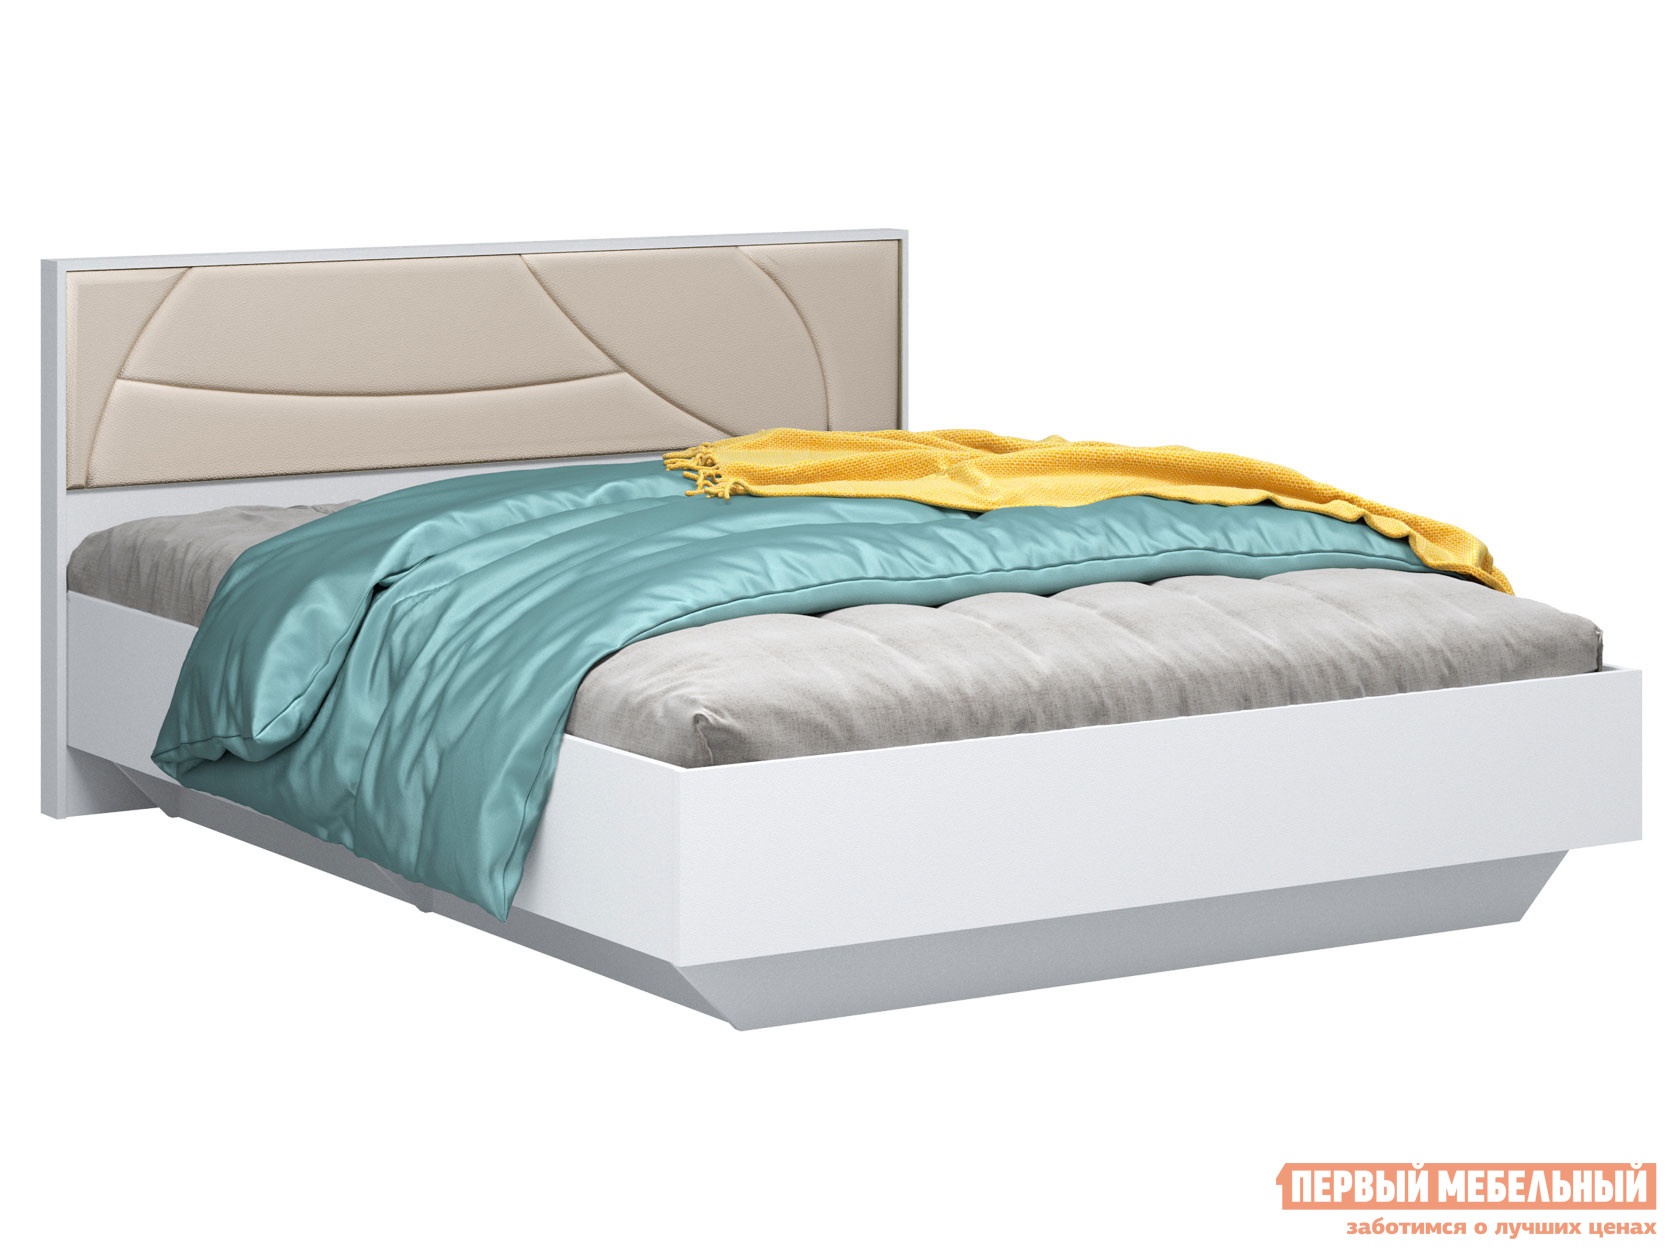 Односпальная кровать мирти люкс белый шагрень ваниль, экокожа, с анатомическим основанием preview 1